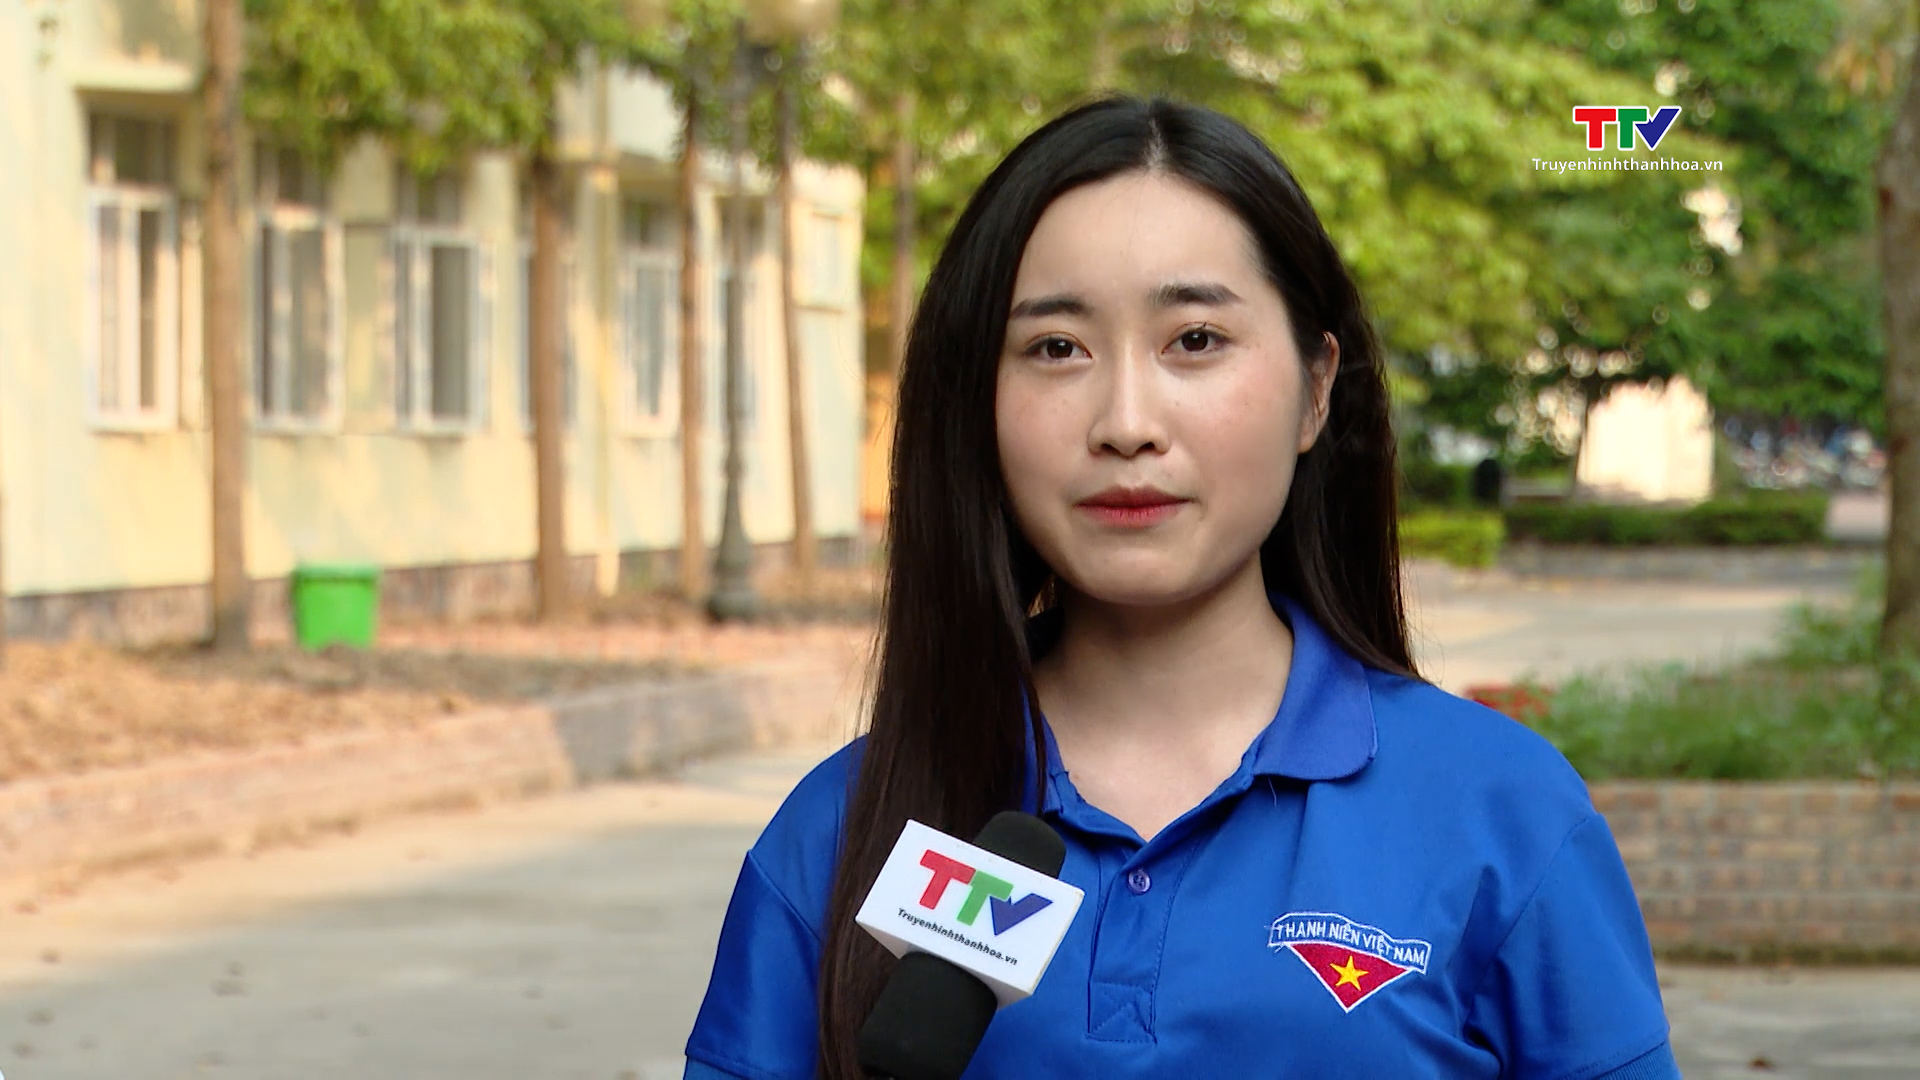 Lưu học sinh Lào – cầu nối thúc đẩy tình đoàn kết Việt – Lào - Ảnh 1.